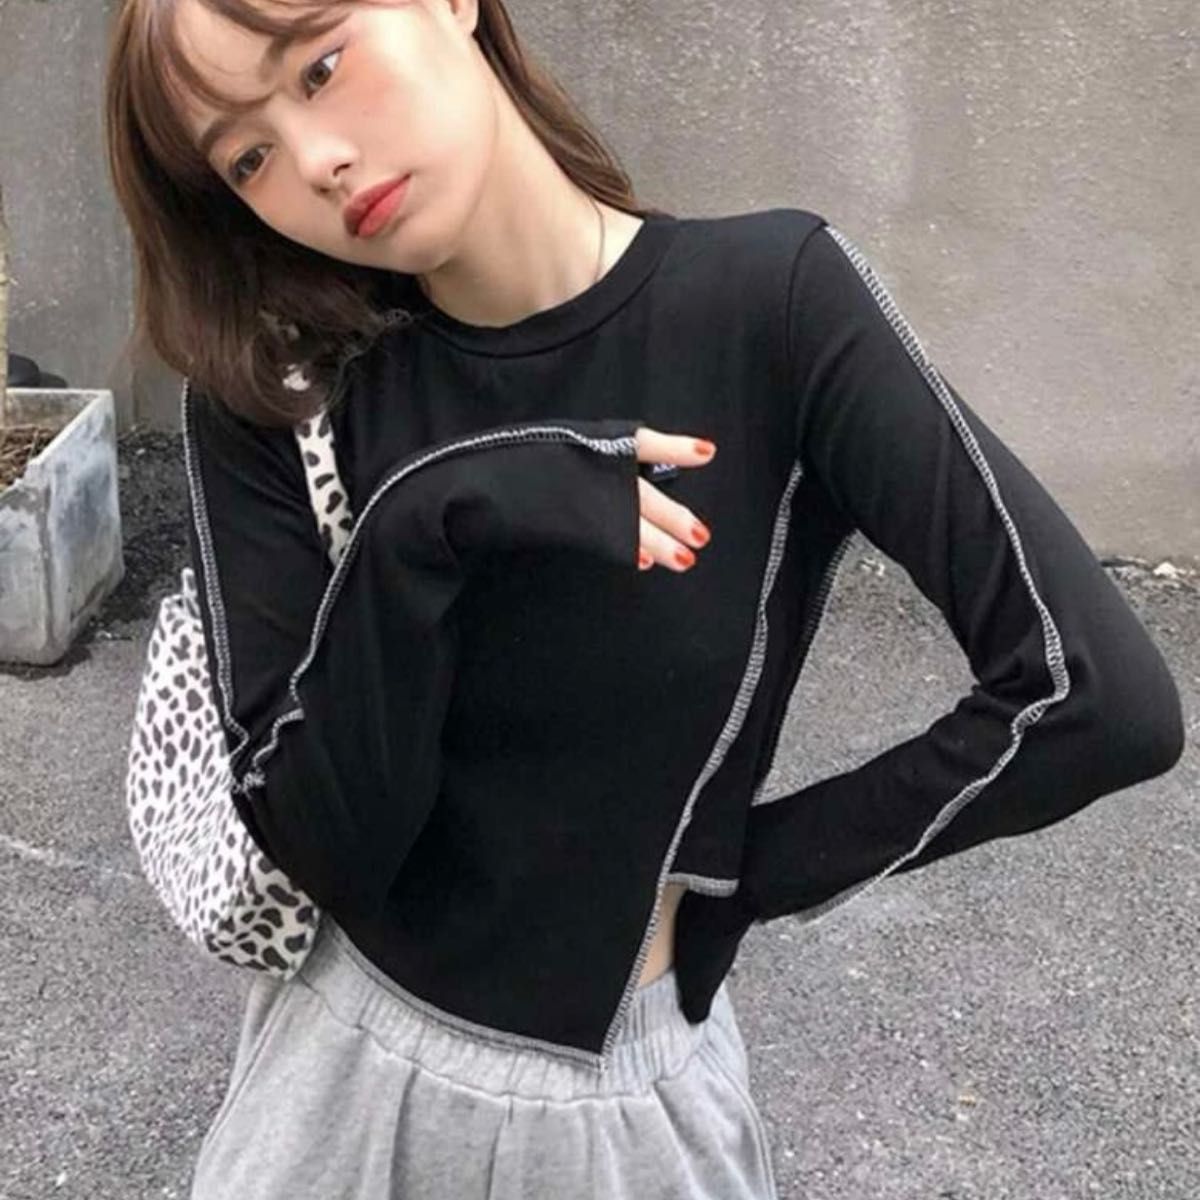 【韓国】 SHEIN シーイン Honeyspot トップステッチ 非対称 クロップド丈 長袖 Tシャツ ロンT ブラック